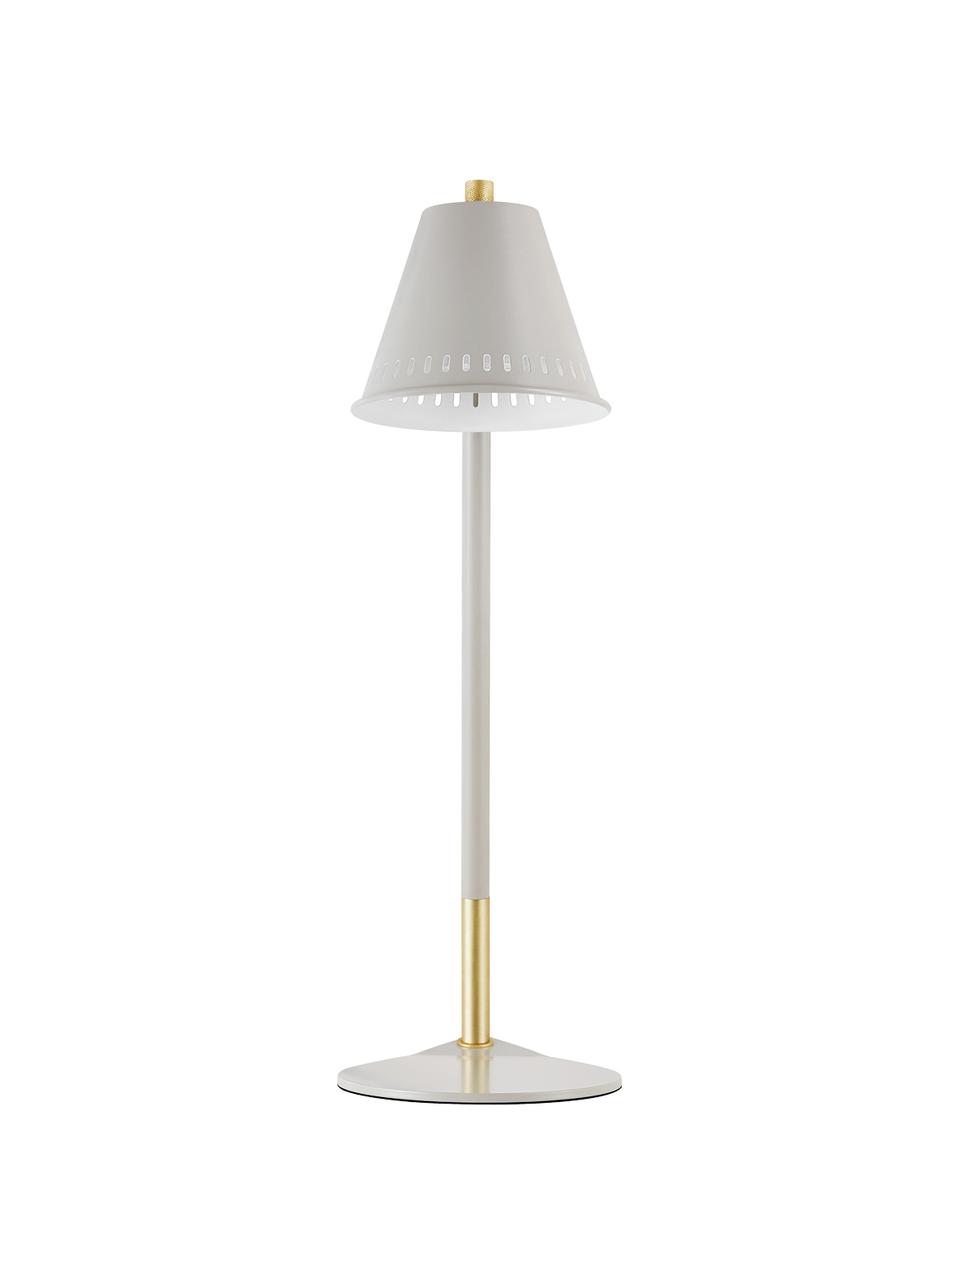 Retro tafellamp Pine, Lampenkap: metaal, Lampvoet: metaal, Grijs, goudkleurig, 15 x 47 cm